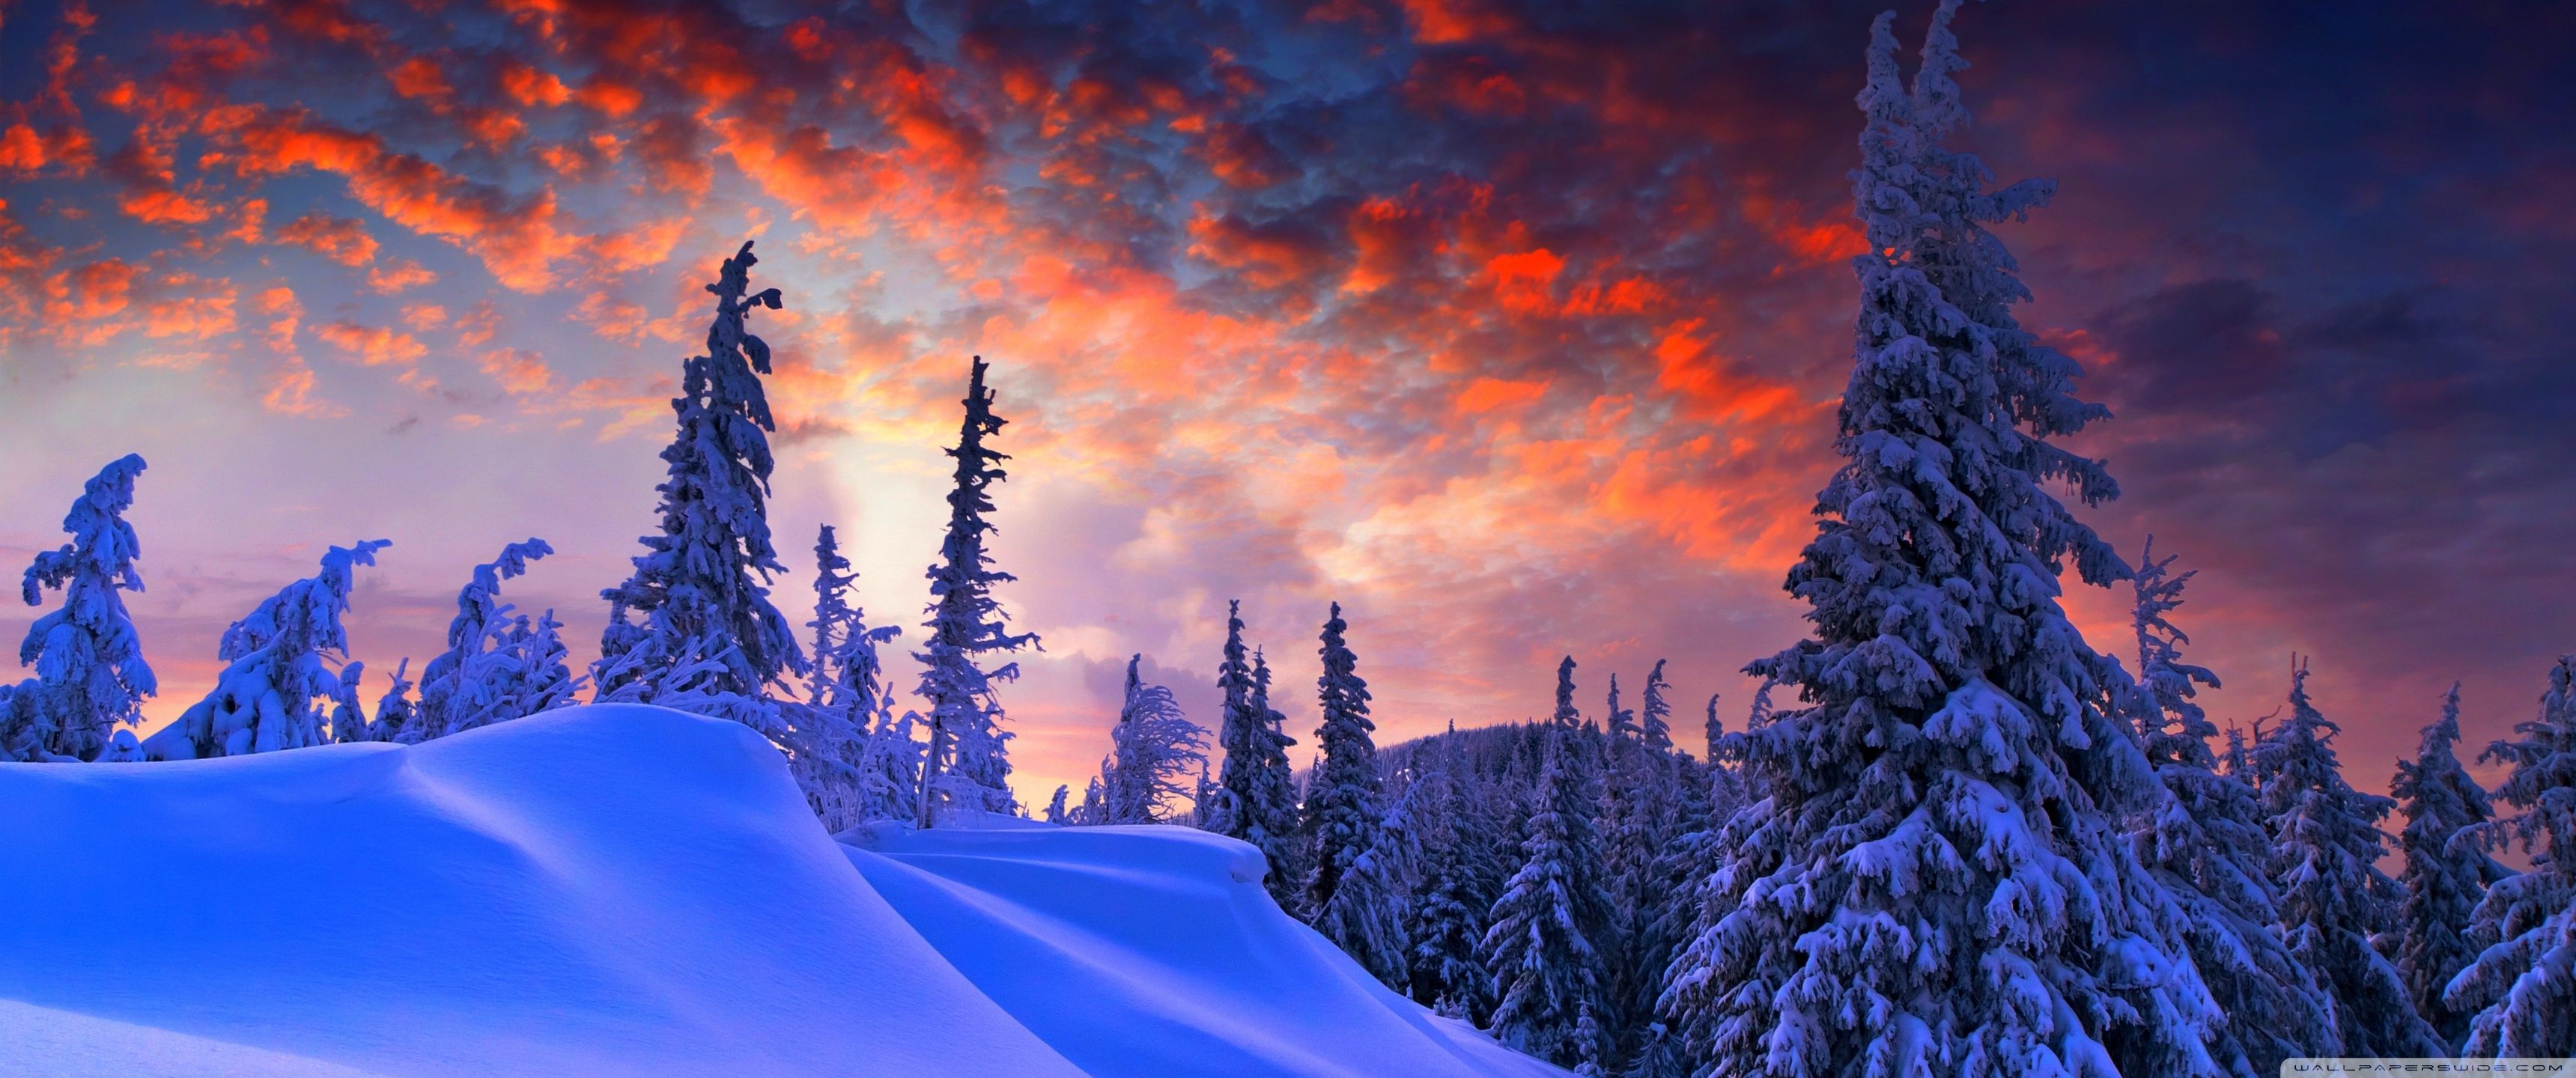 Giữ nhiệt trái tim yêu thương của bạn trong mùa đông năm nay với những bức ảnh tuyệt đẹp. Từ những cánh đồng tuyết trắng đến những cộng đồng đông đúc, chúng tôi mang đến cho bạn một bộ sưu tập các ảnh nền độc đáo và nghệ thuật đẹp mắt cho màn hình của bạn. Hãy khám phá ngay những bức ảnh này để tận hưởng cảm giác lạnh lẽo nhưng ấm áp của mùa đông.